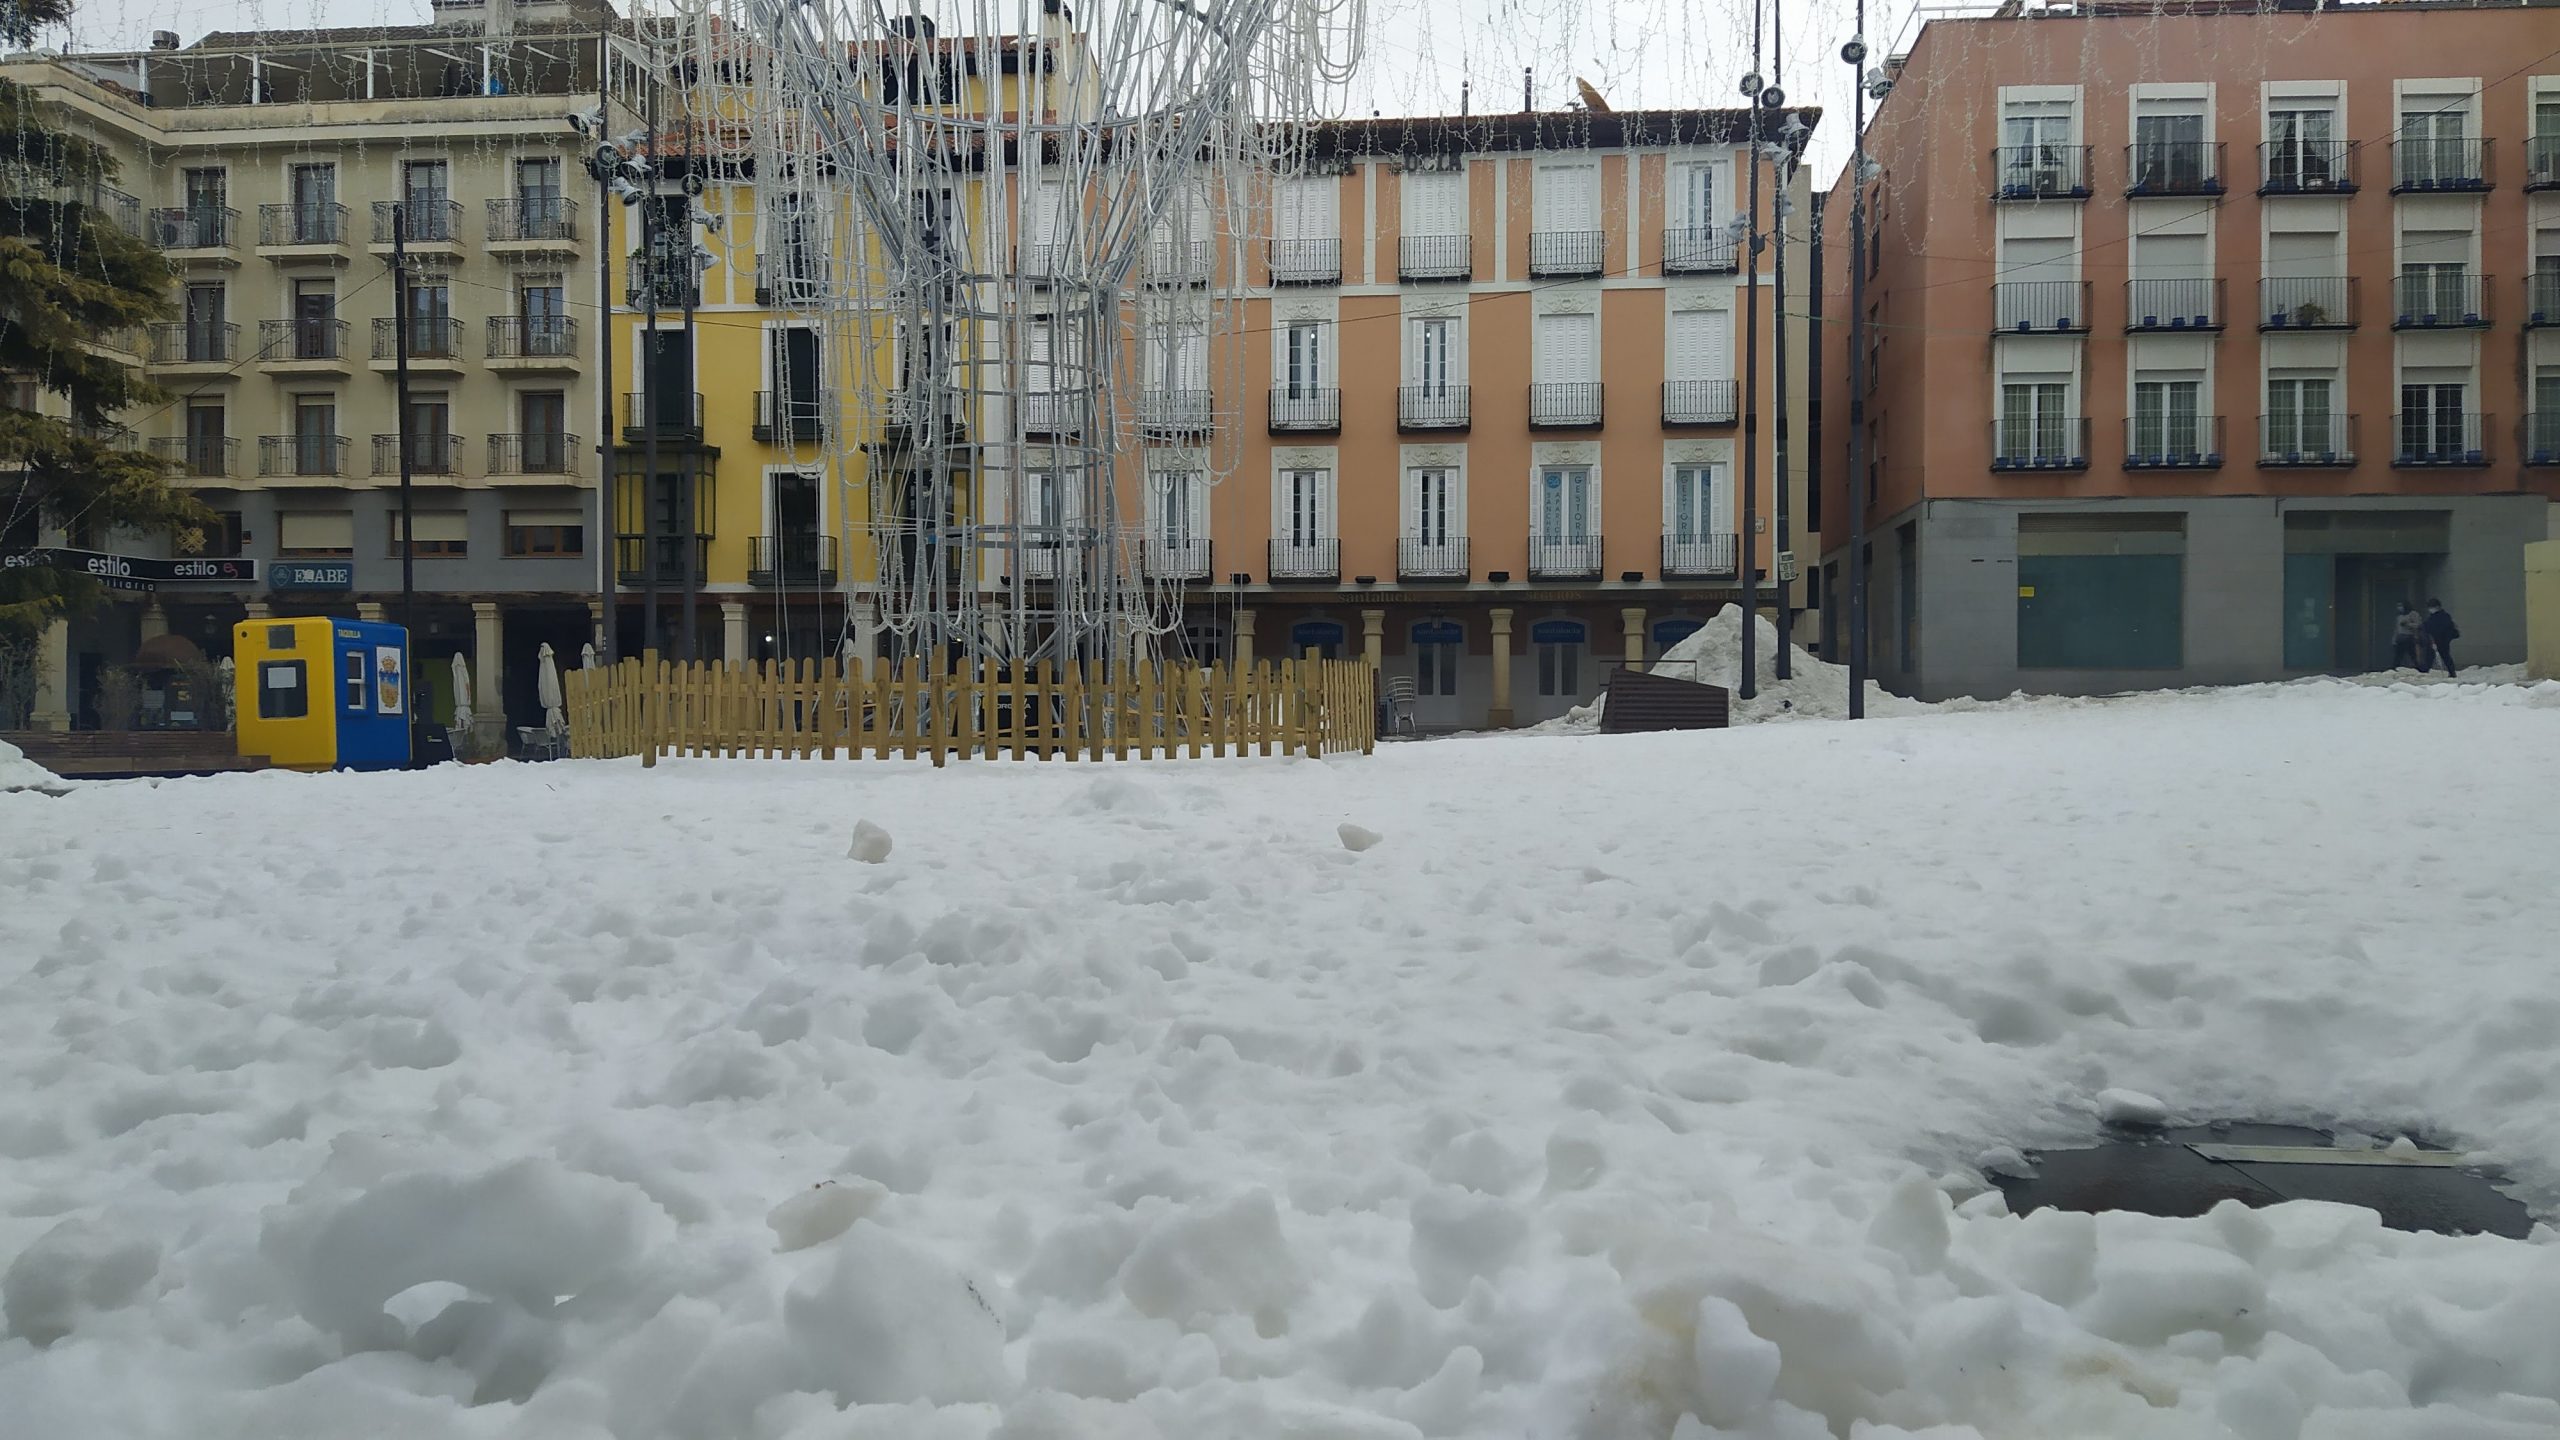 Sigue habiendo mucha nieve en la Plaza Mayor de Guadalajara el 20 de enero de 2021, casi dos semanas después del paso de "Filomena". (Foto: La Crónic@)